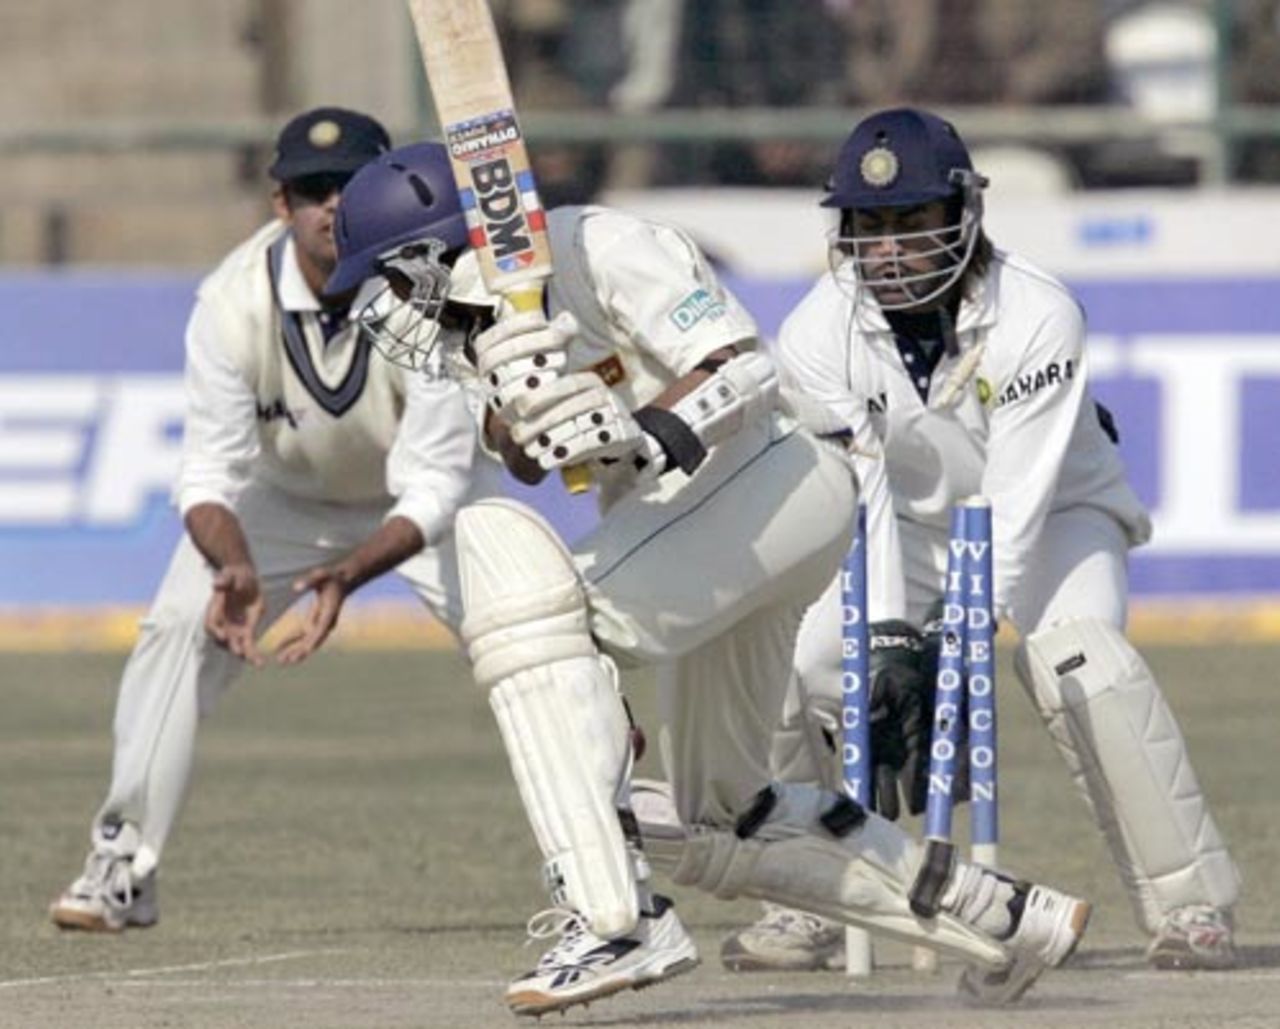 Tillakaratne Dilshan foxed by Anil Kumble, India v Sri Lanka, 2nd Test, Delhi, 3rd day, December 14, 2005